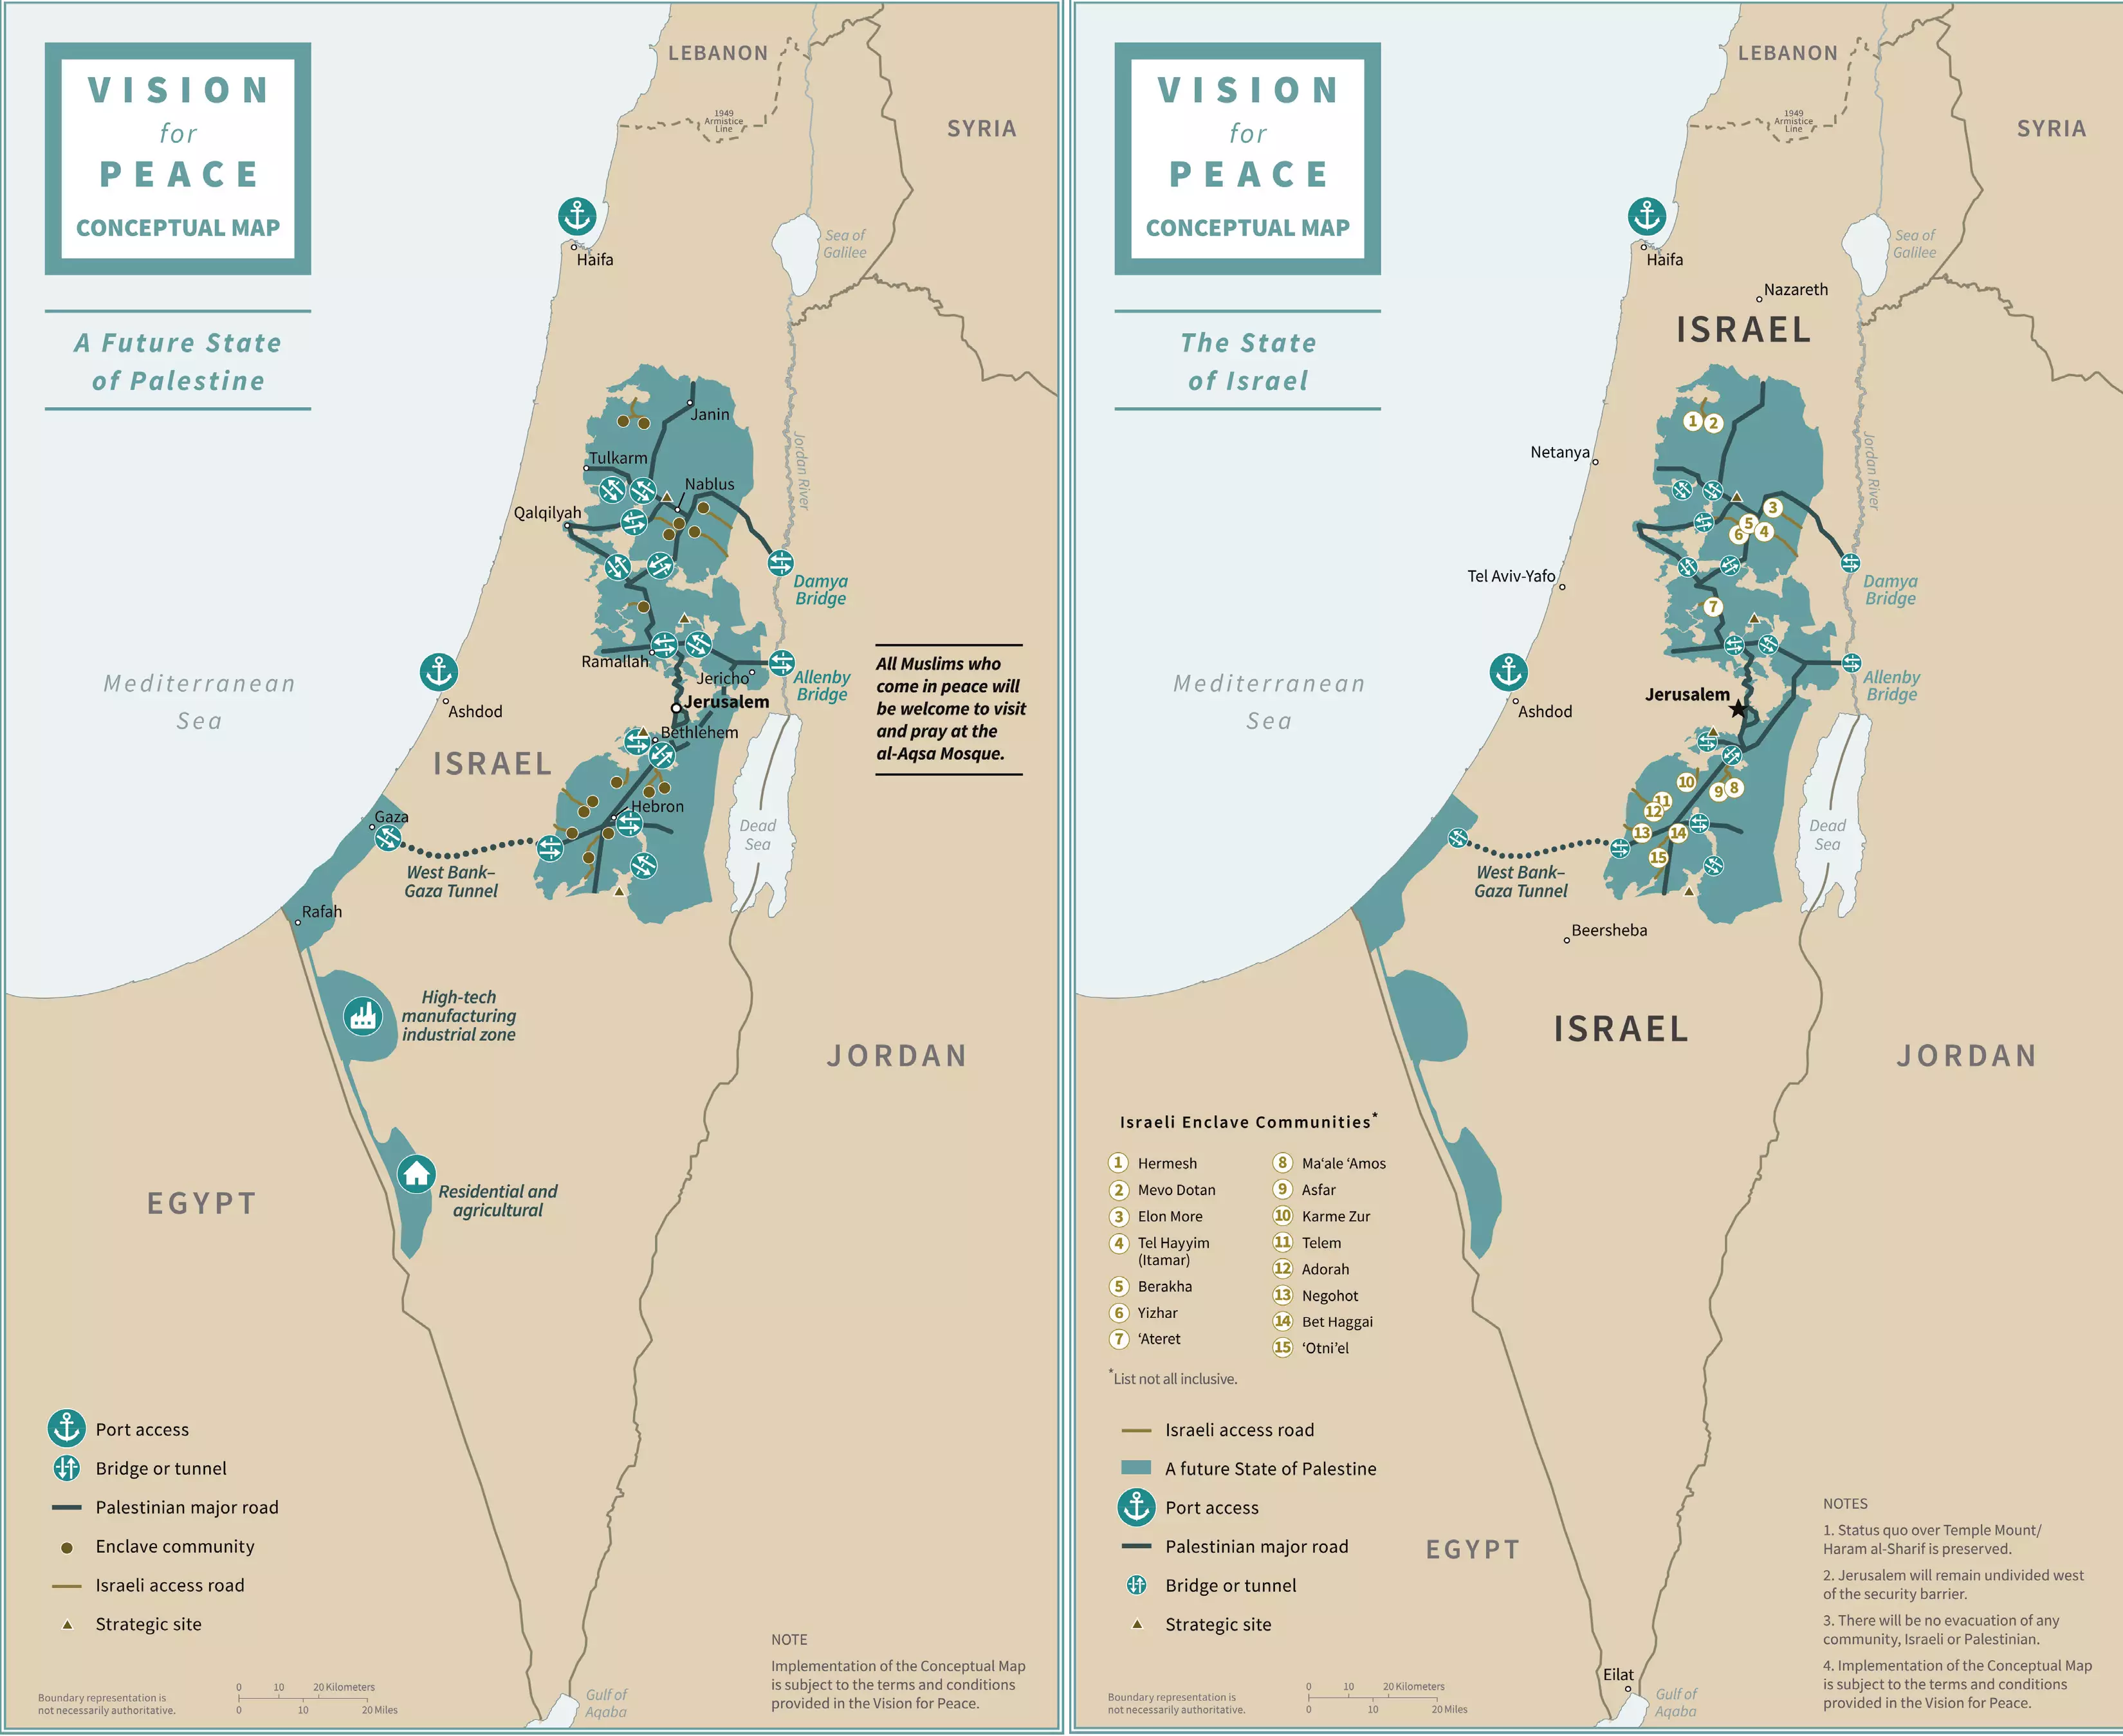 "Угода століття". Так після її реалізації повинна, за задумом авторів, виглядати територія Палестини (на карті відзначена зеленим кольором). На території Західного берега "легалізуються" ізраїльські поселення. Столиця Ізраїлю – Єрусалим